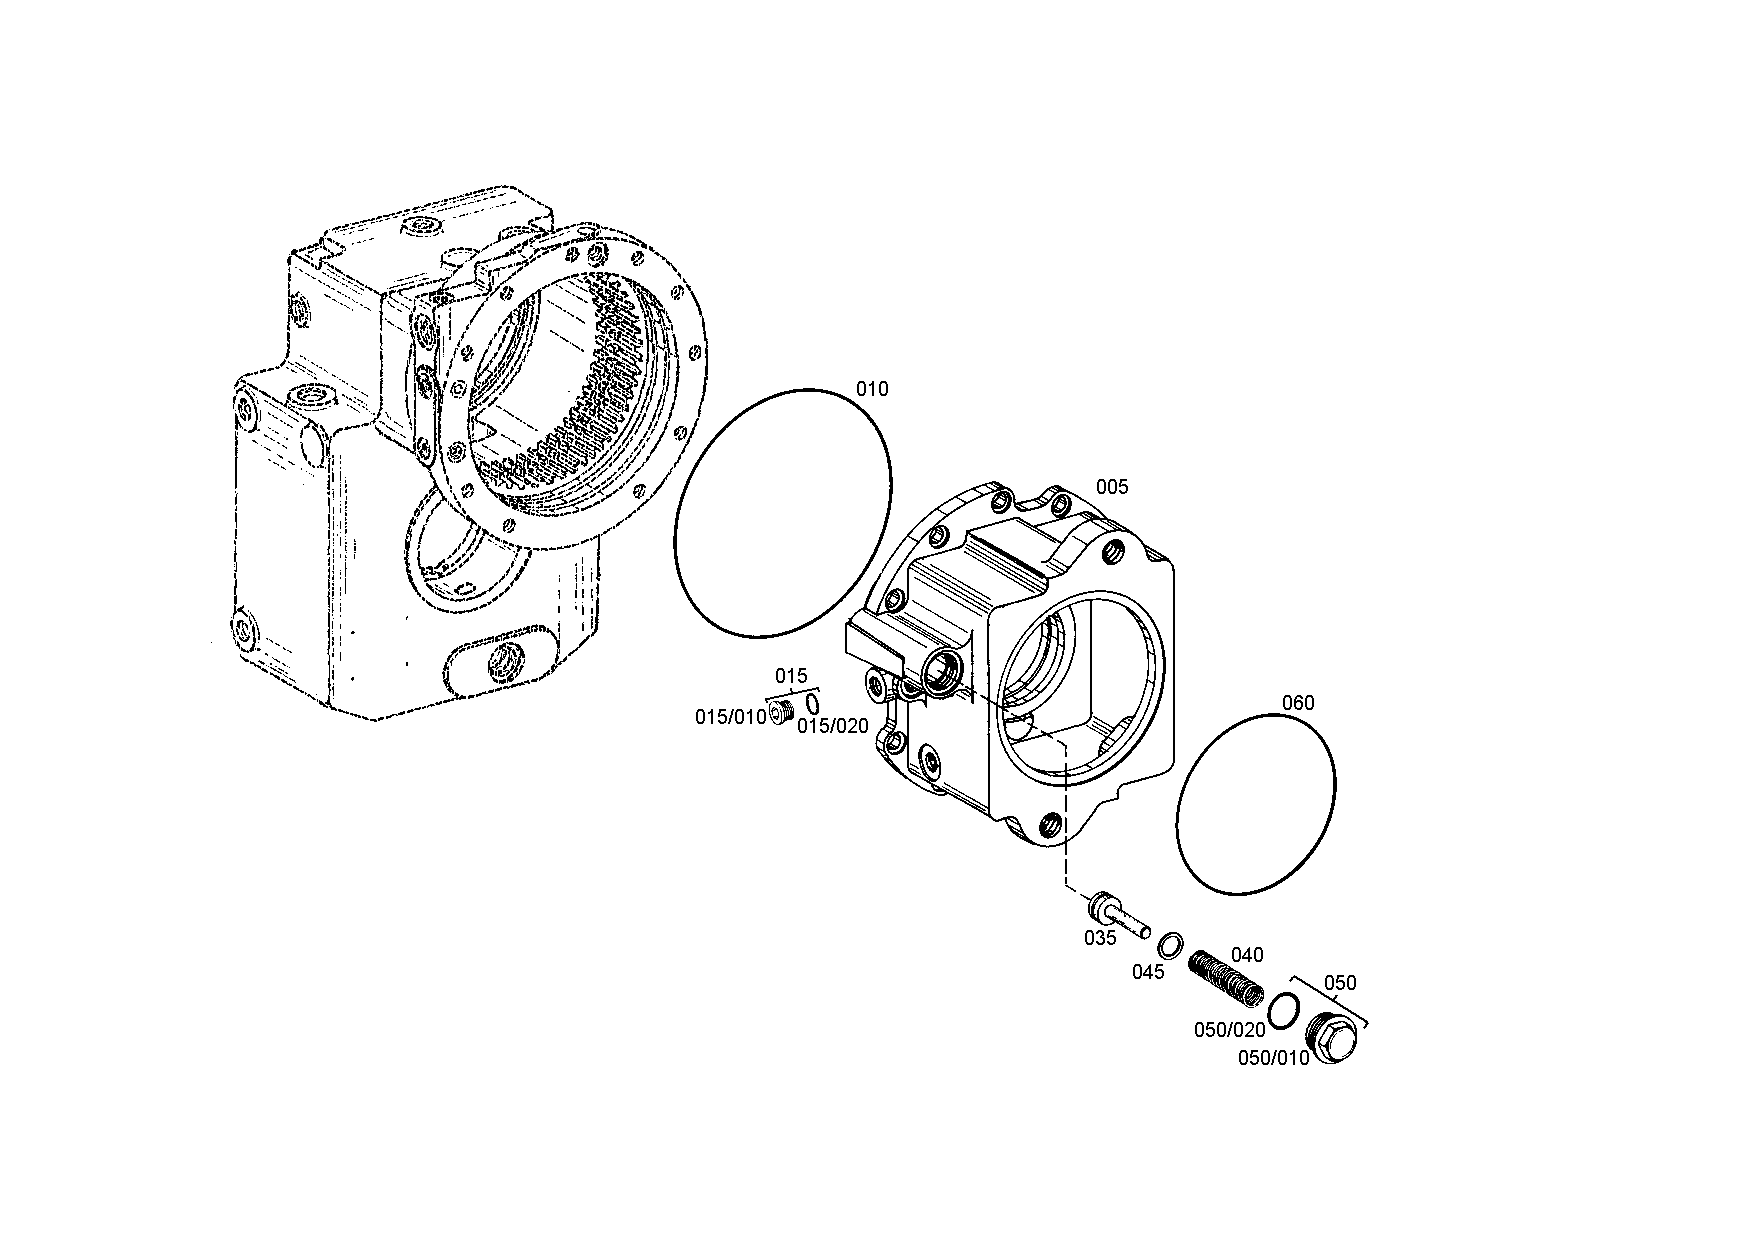 drawing for SCHOPF MASCHINENBAU GMBH 89344 - O-RING (figure 5)